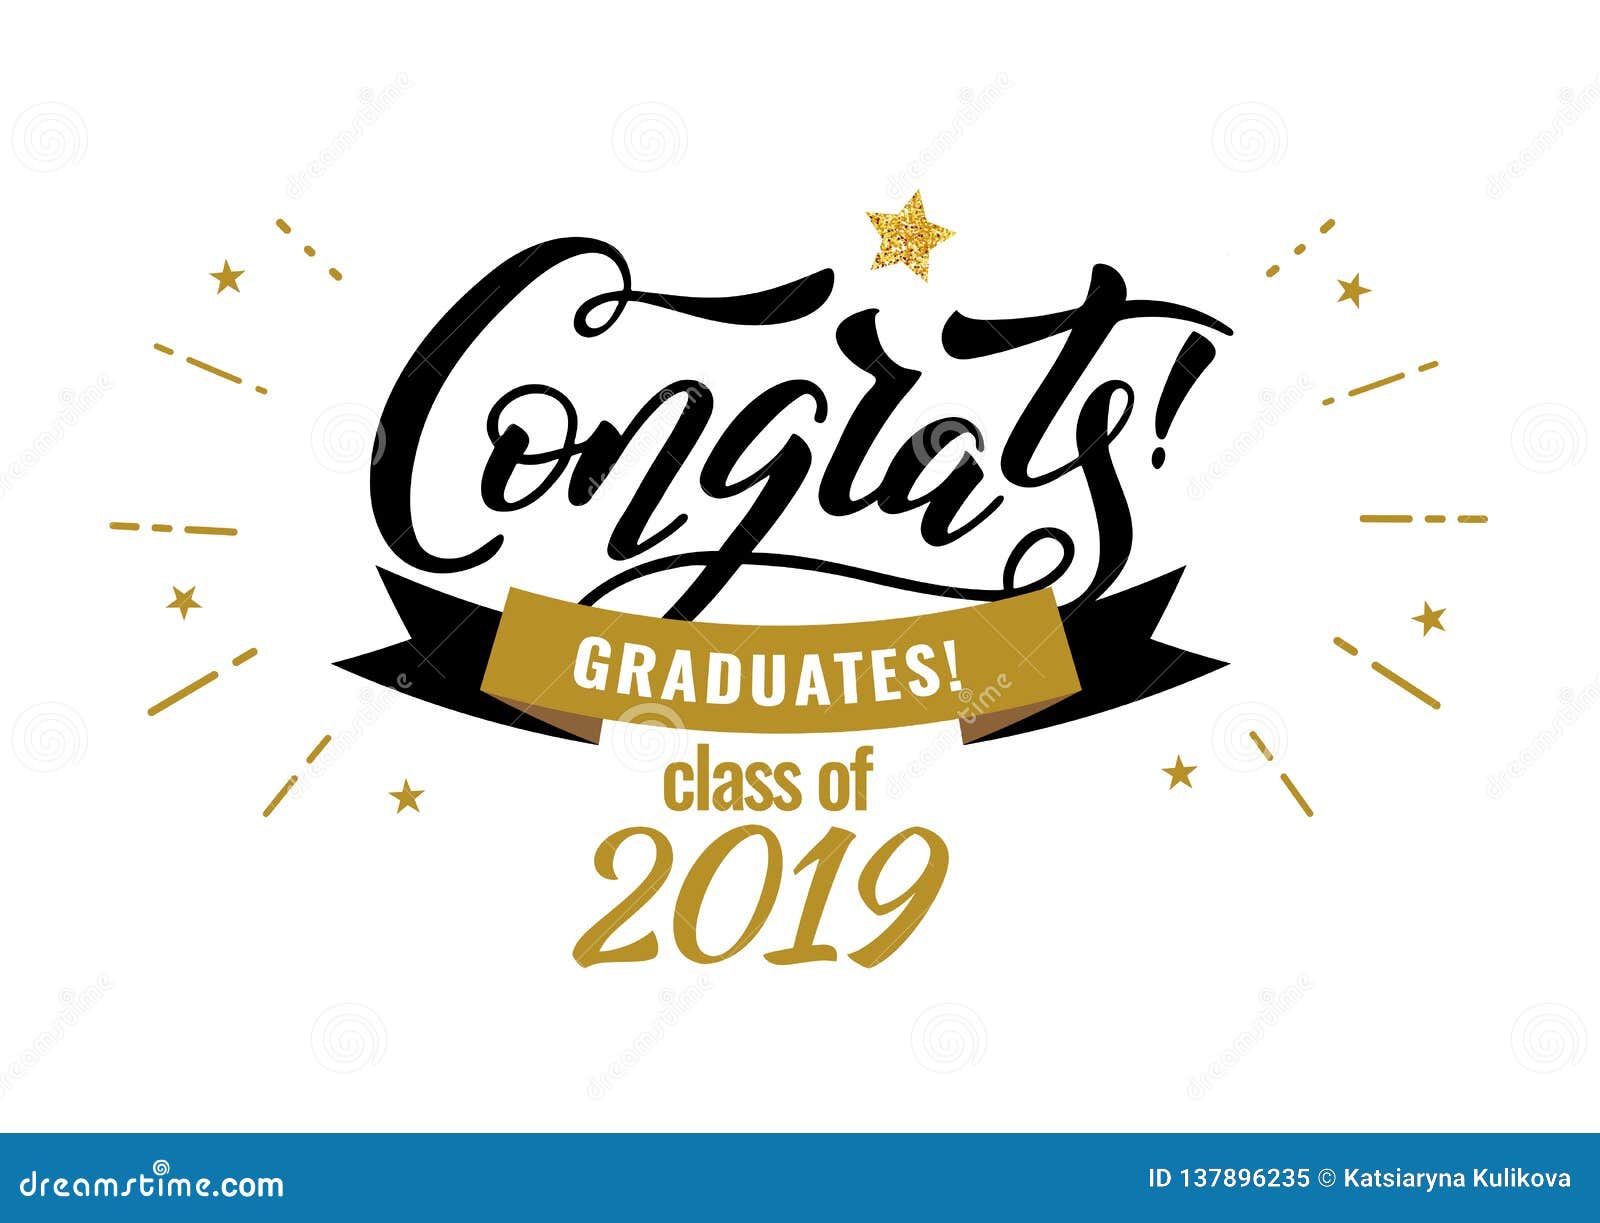 congrats graduates class of 2019 graduation congratulation party